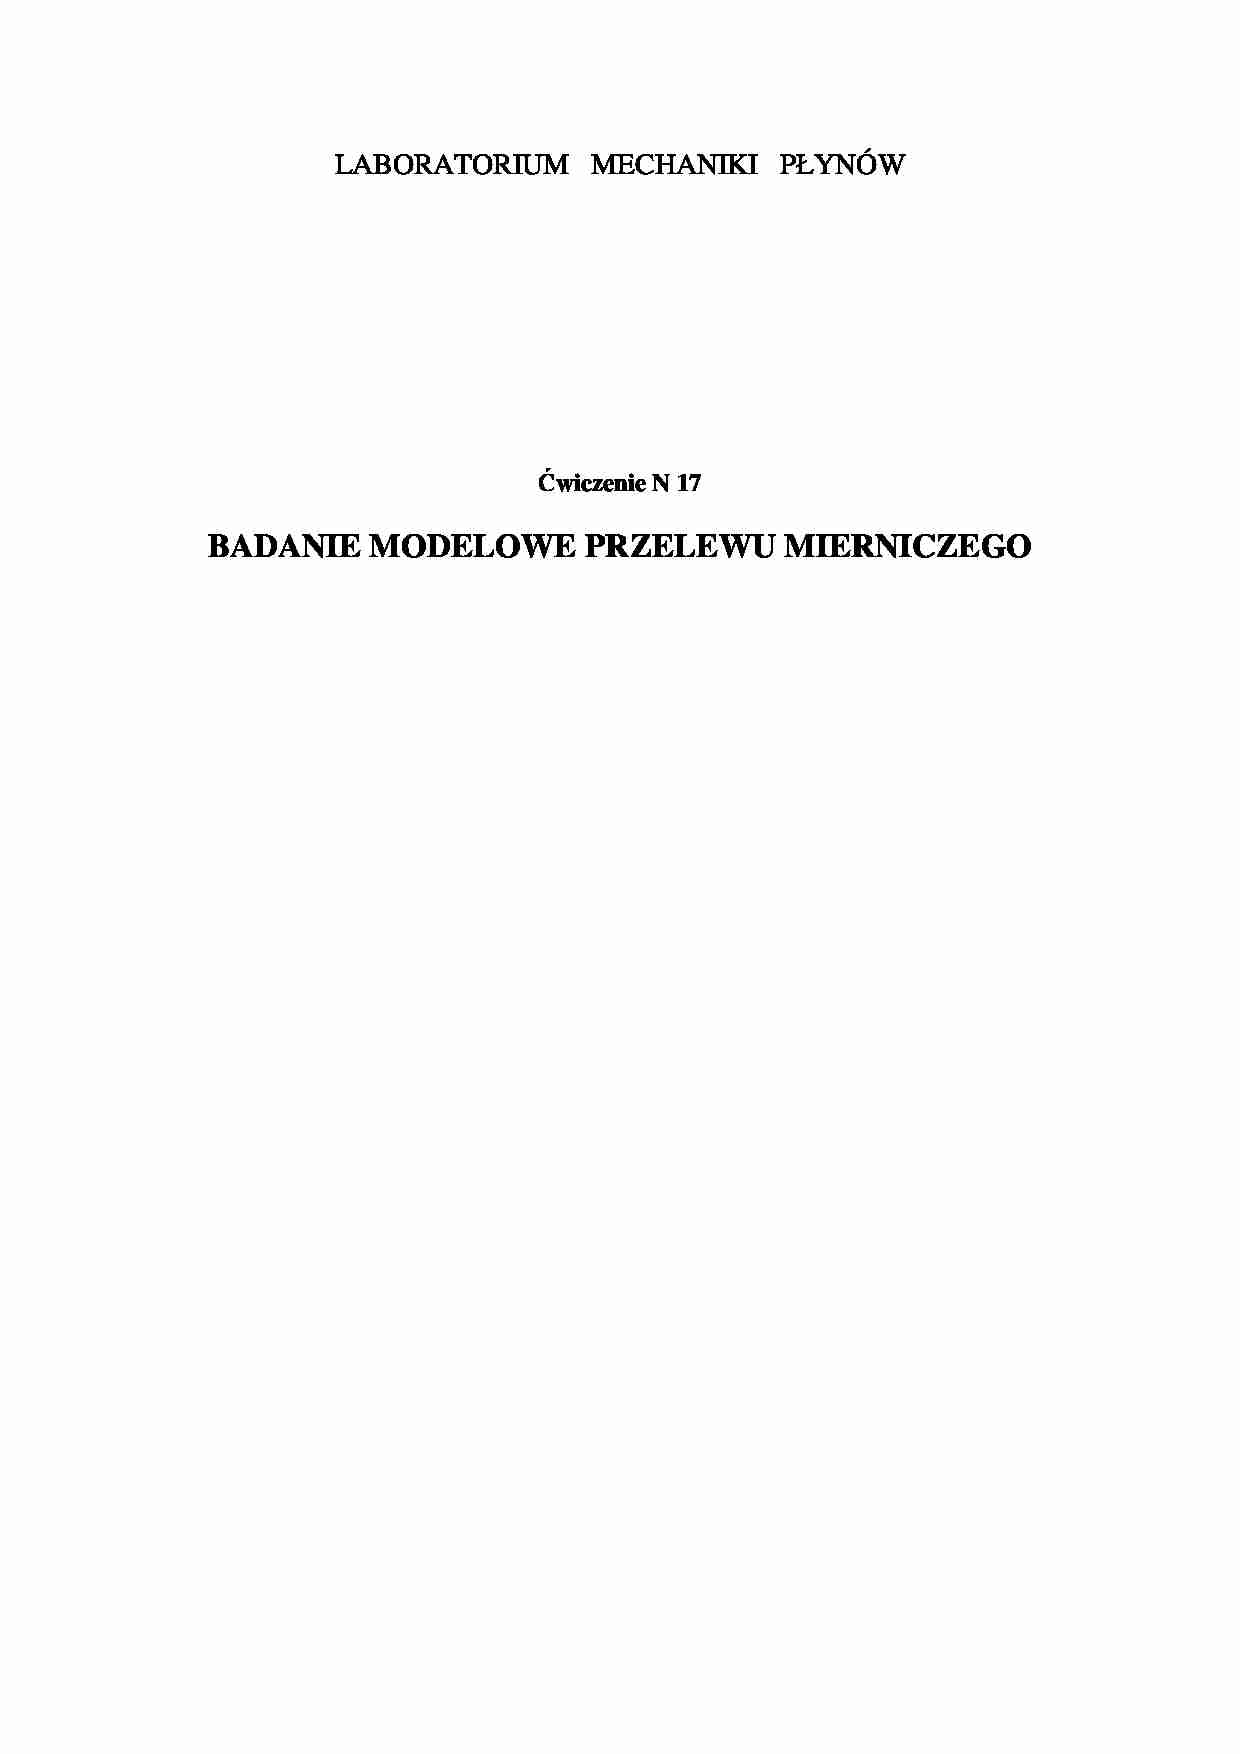 Sprawozdanie z badania modelowego przelewu mierniczego - strona 1